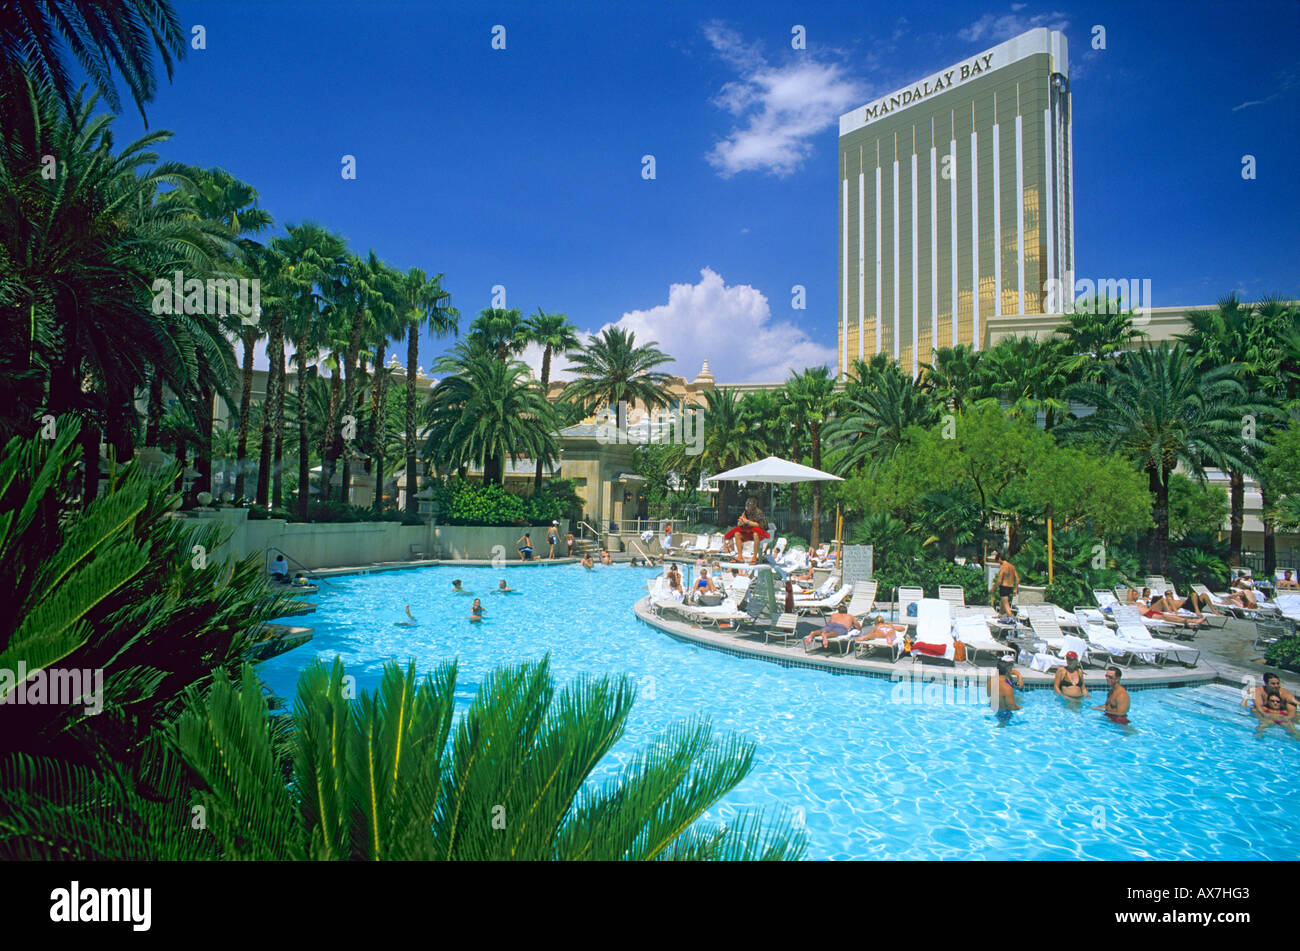 Pool at Mandalay Bay Hotel, Las Vegas, Nevada, USA Stock Photo